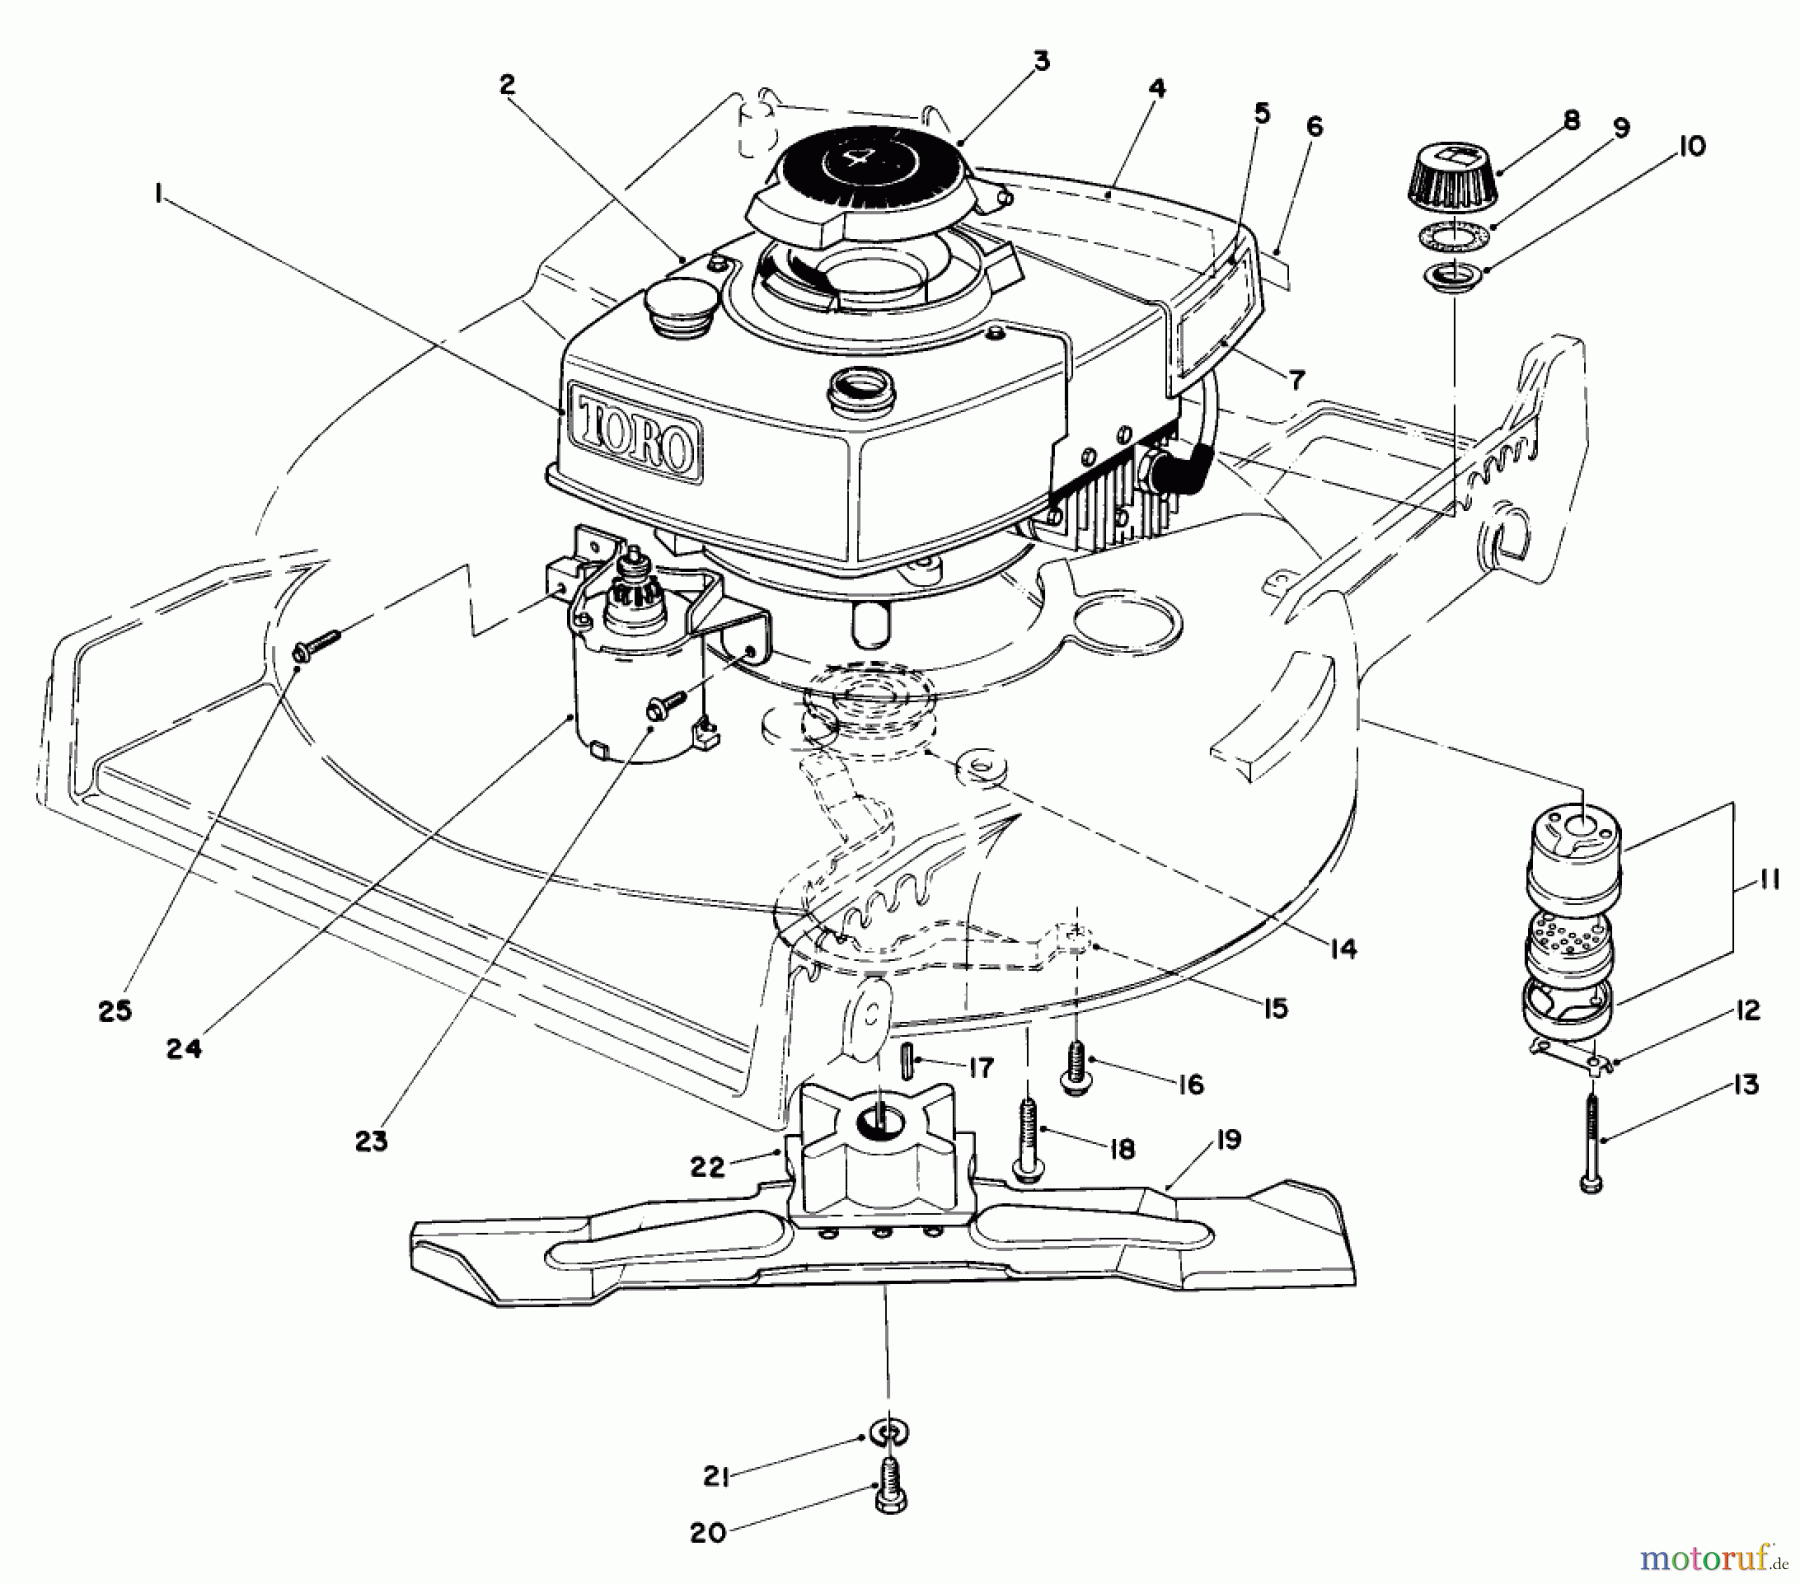  Toro Neu Mowers, Walk-Behind Seite 1 20715 - Toro Lawnmower, 1984 (4000001-4999999) ENGINE ASSEMBLY